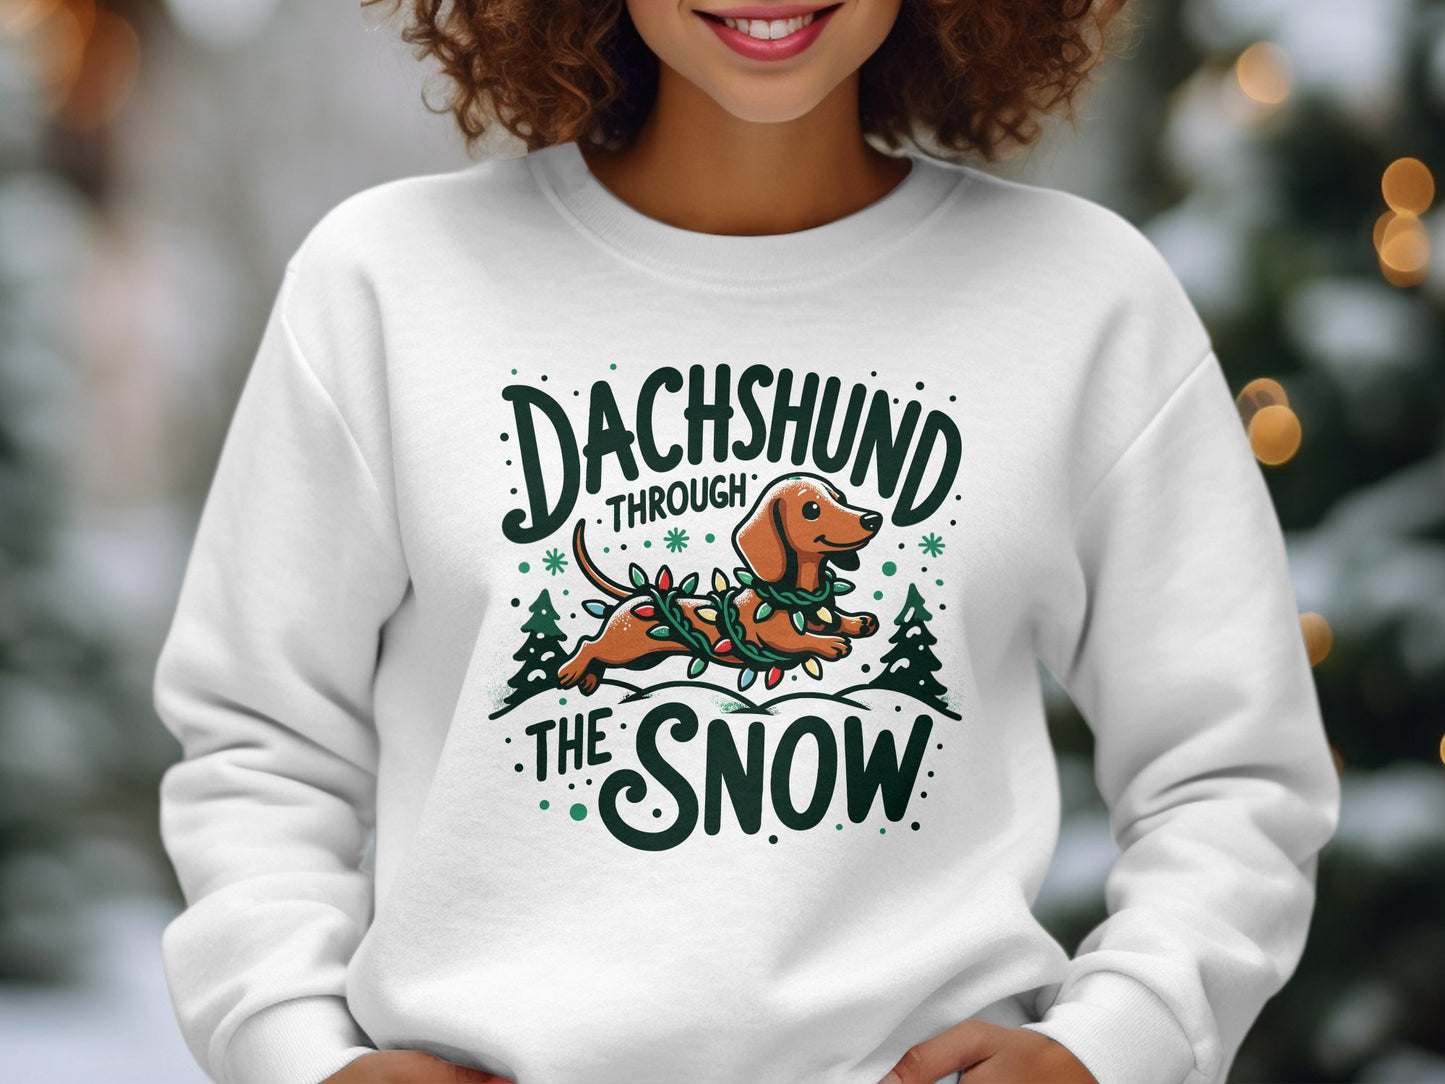 Dachshund Through the Snow Sweatshirt - A Wiener Wonderland Adventure